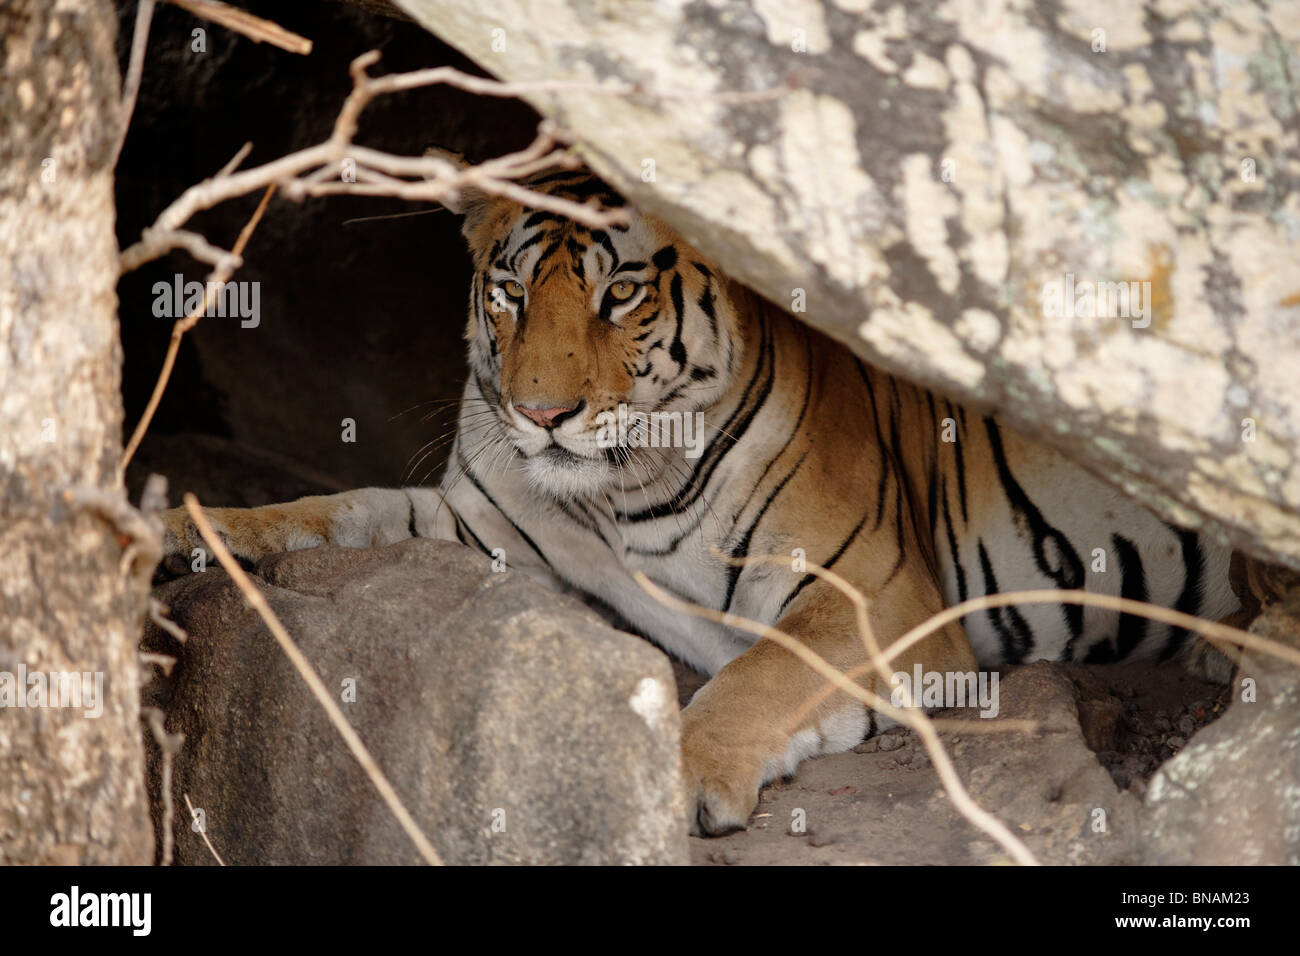 Tigre in tana immagini e fotografie stock ad alta risoluzione - Alamy